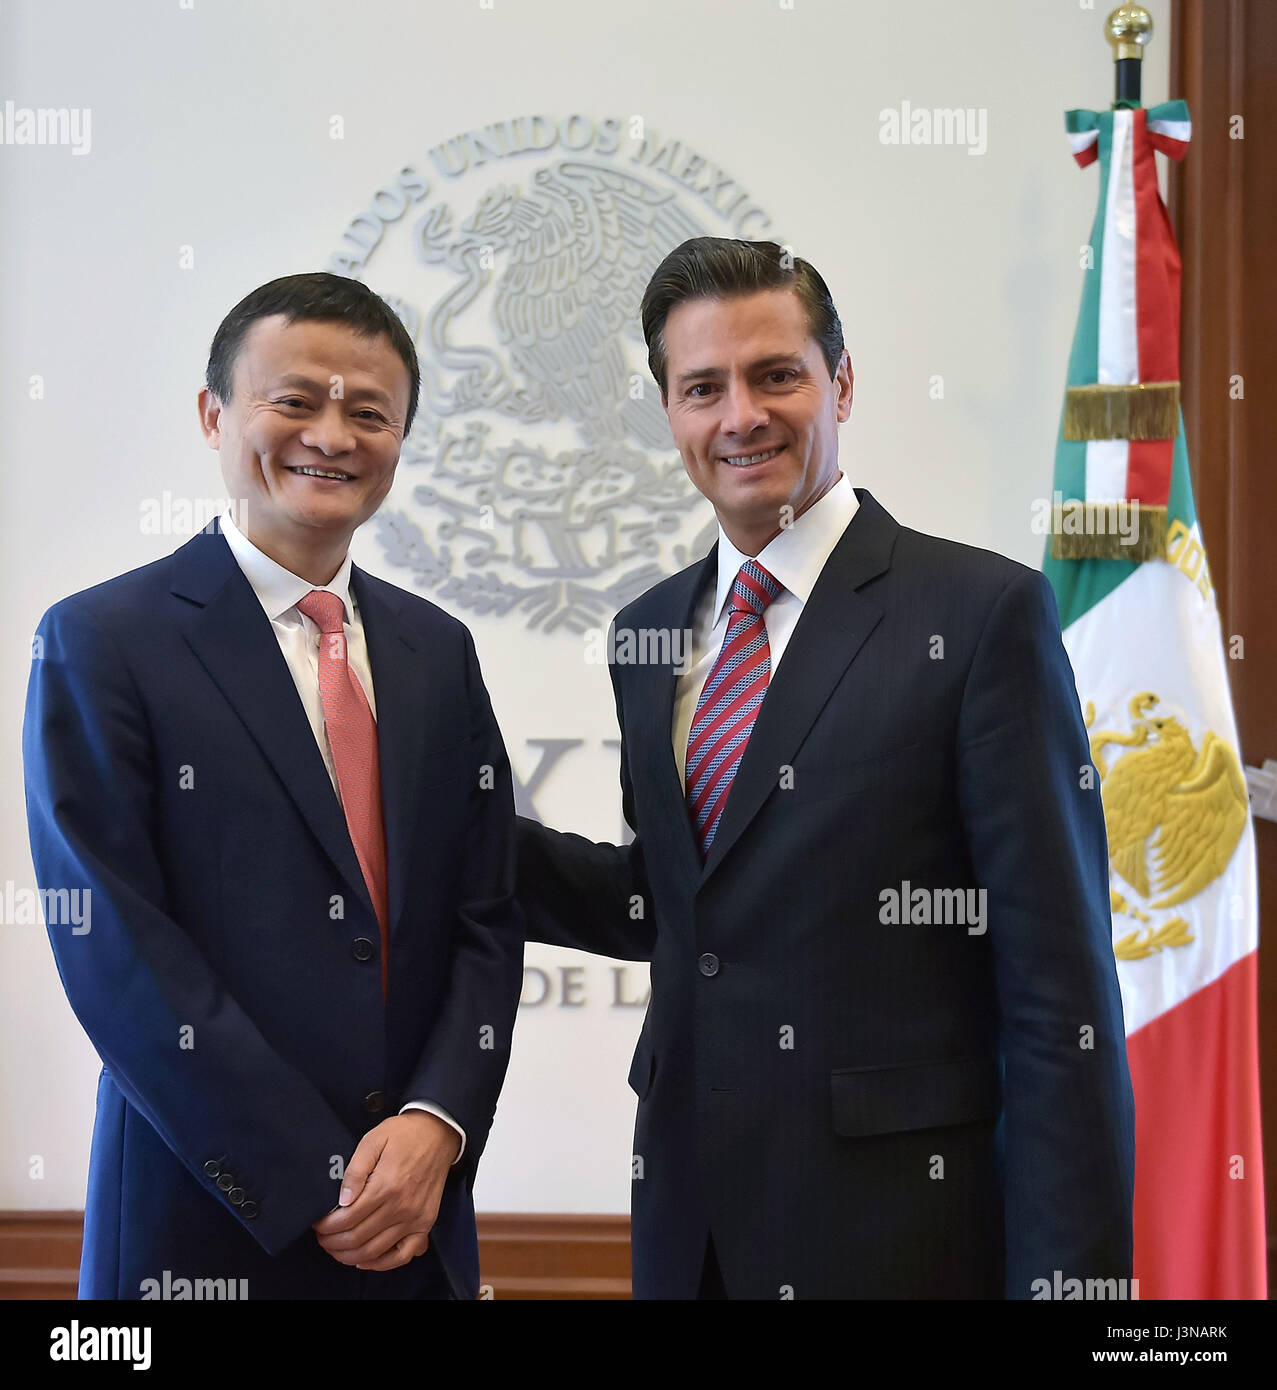 Le Président mexicain Enrique Pena Nieto, droite, rencontre des PDG d'Alibaba Jack Ma à la résidence officielle de Los Pinos, 5 mai 2017 à Mexico, Mexique. Le TWO a examiné le commerce en ligne en Chine extension des opérations géant au Mexique. Banque D'Images